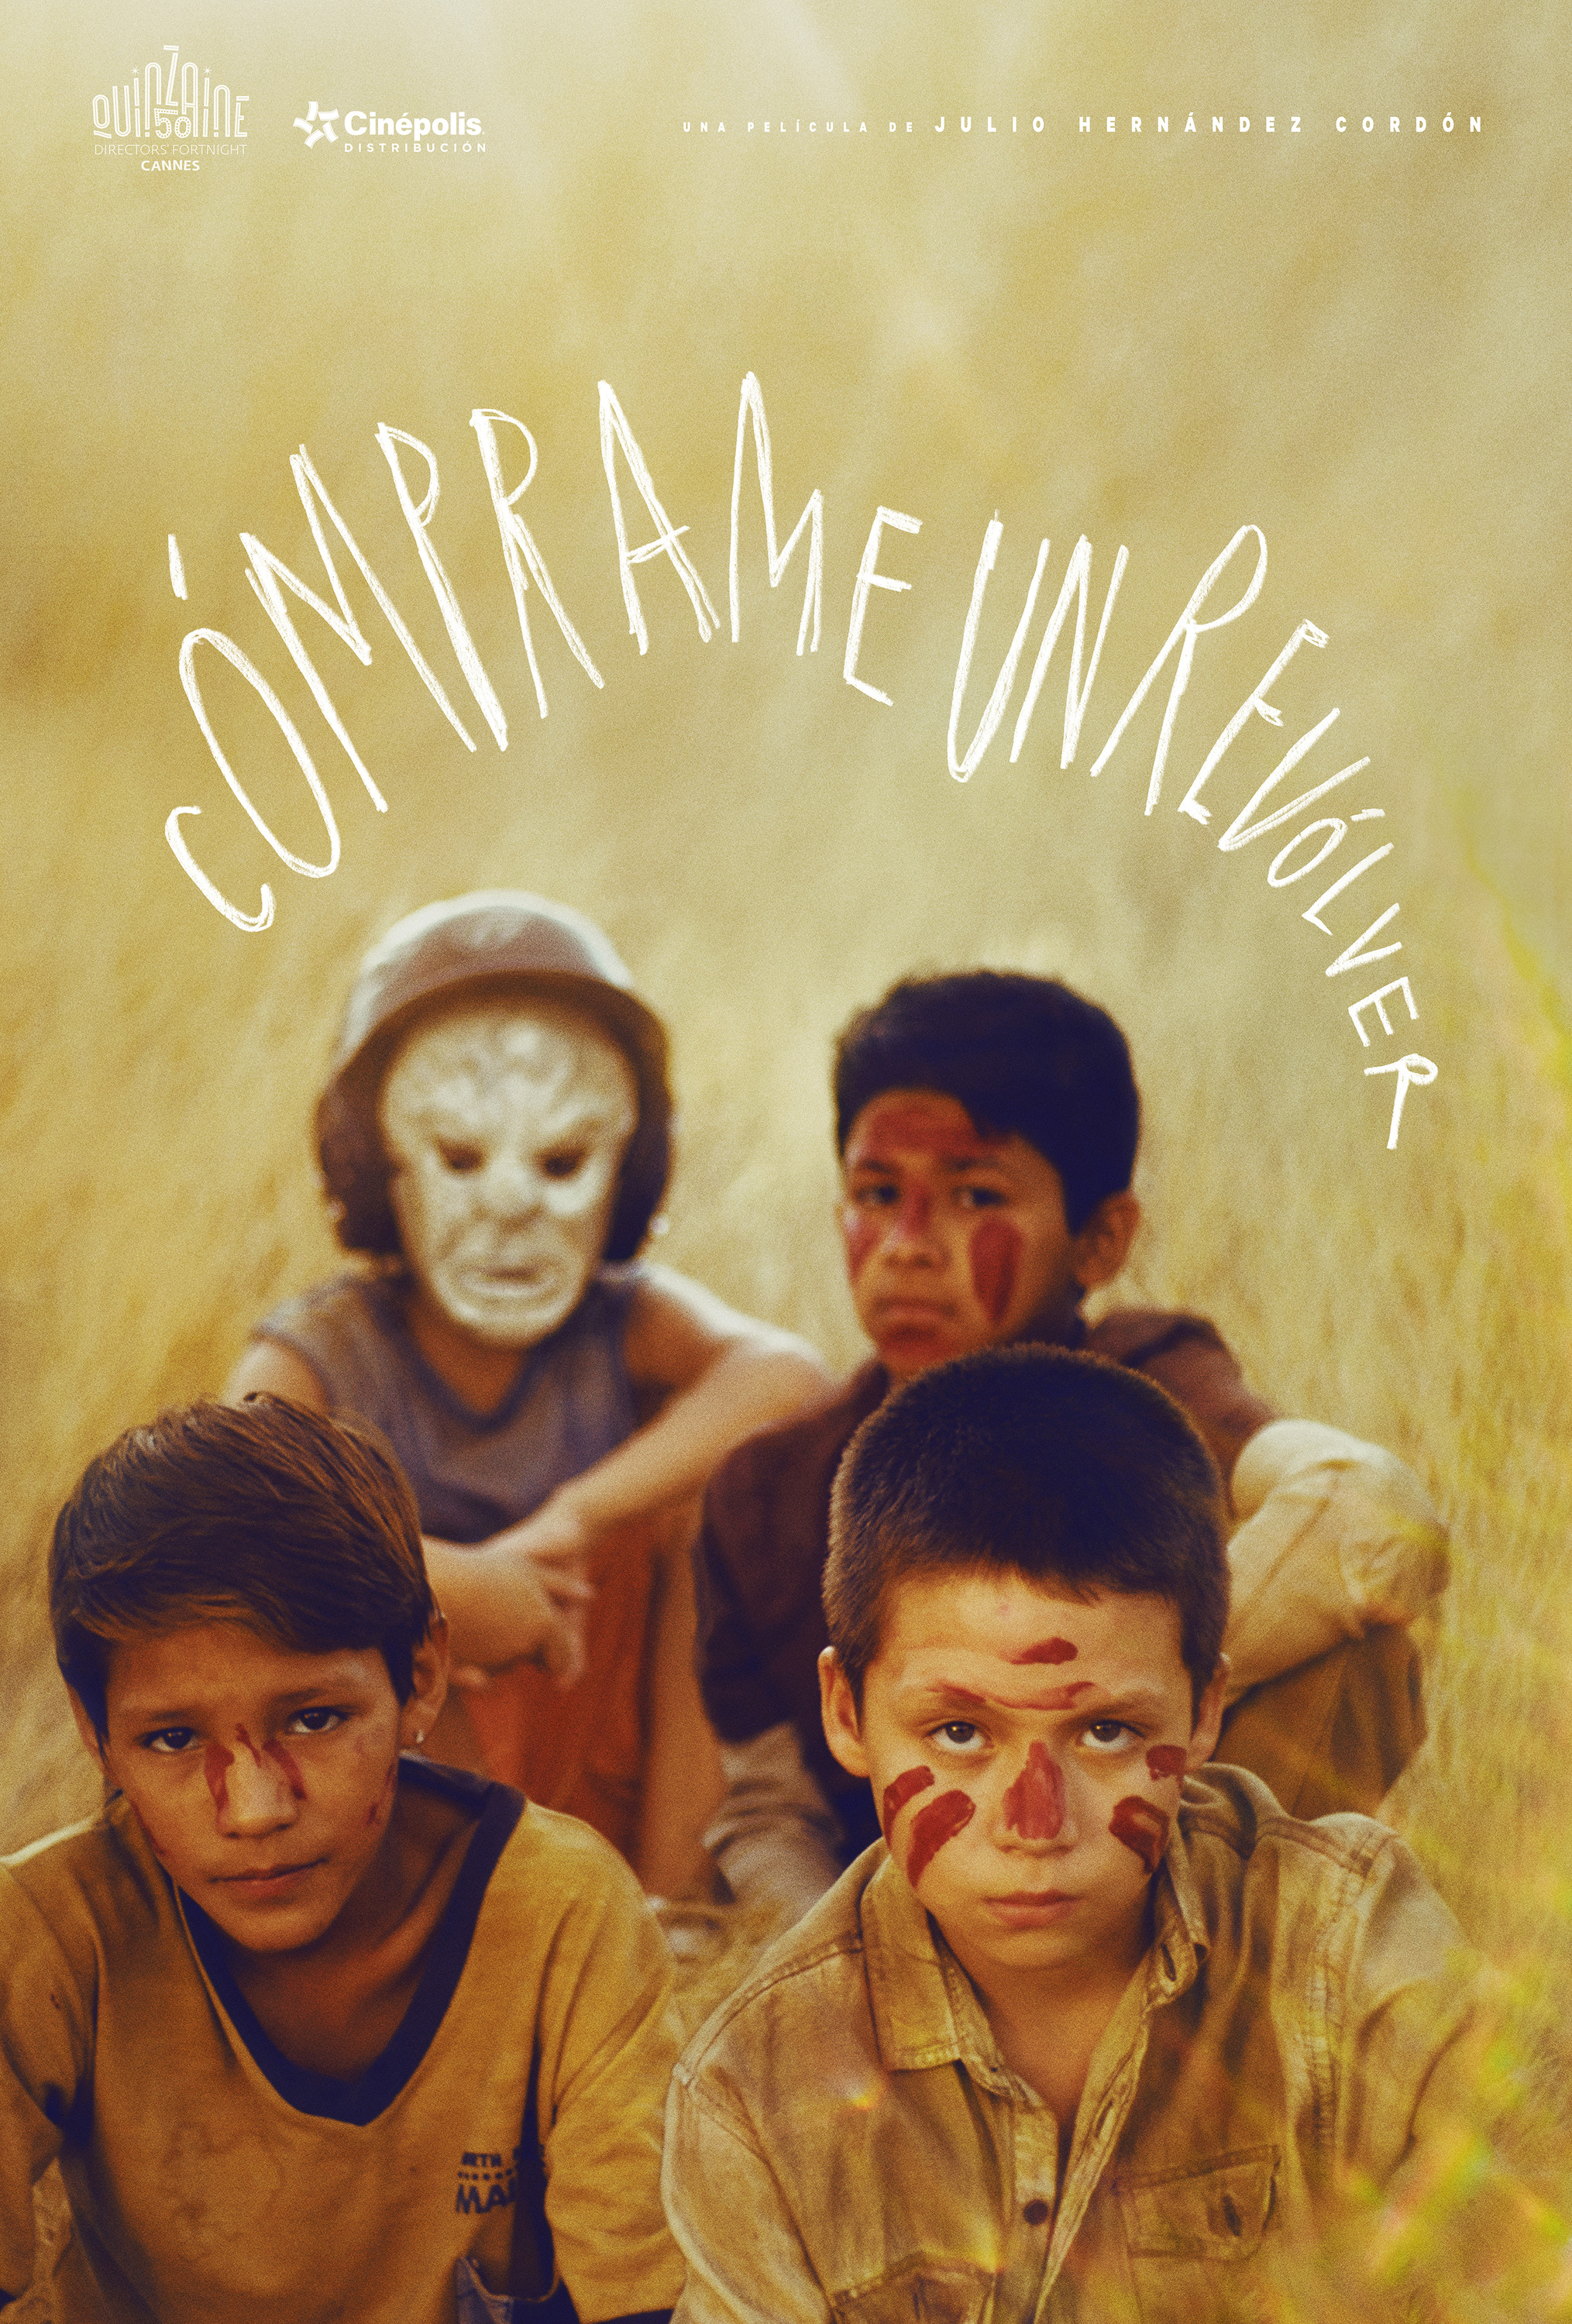 Mega Sized Movie Poster Image for Cómprame un revolver (#1 of 4)